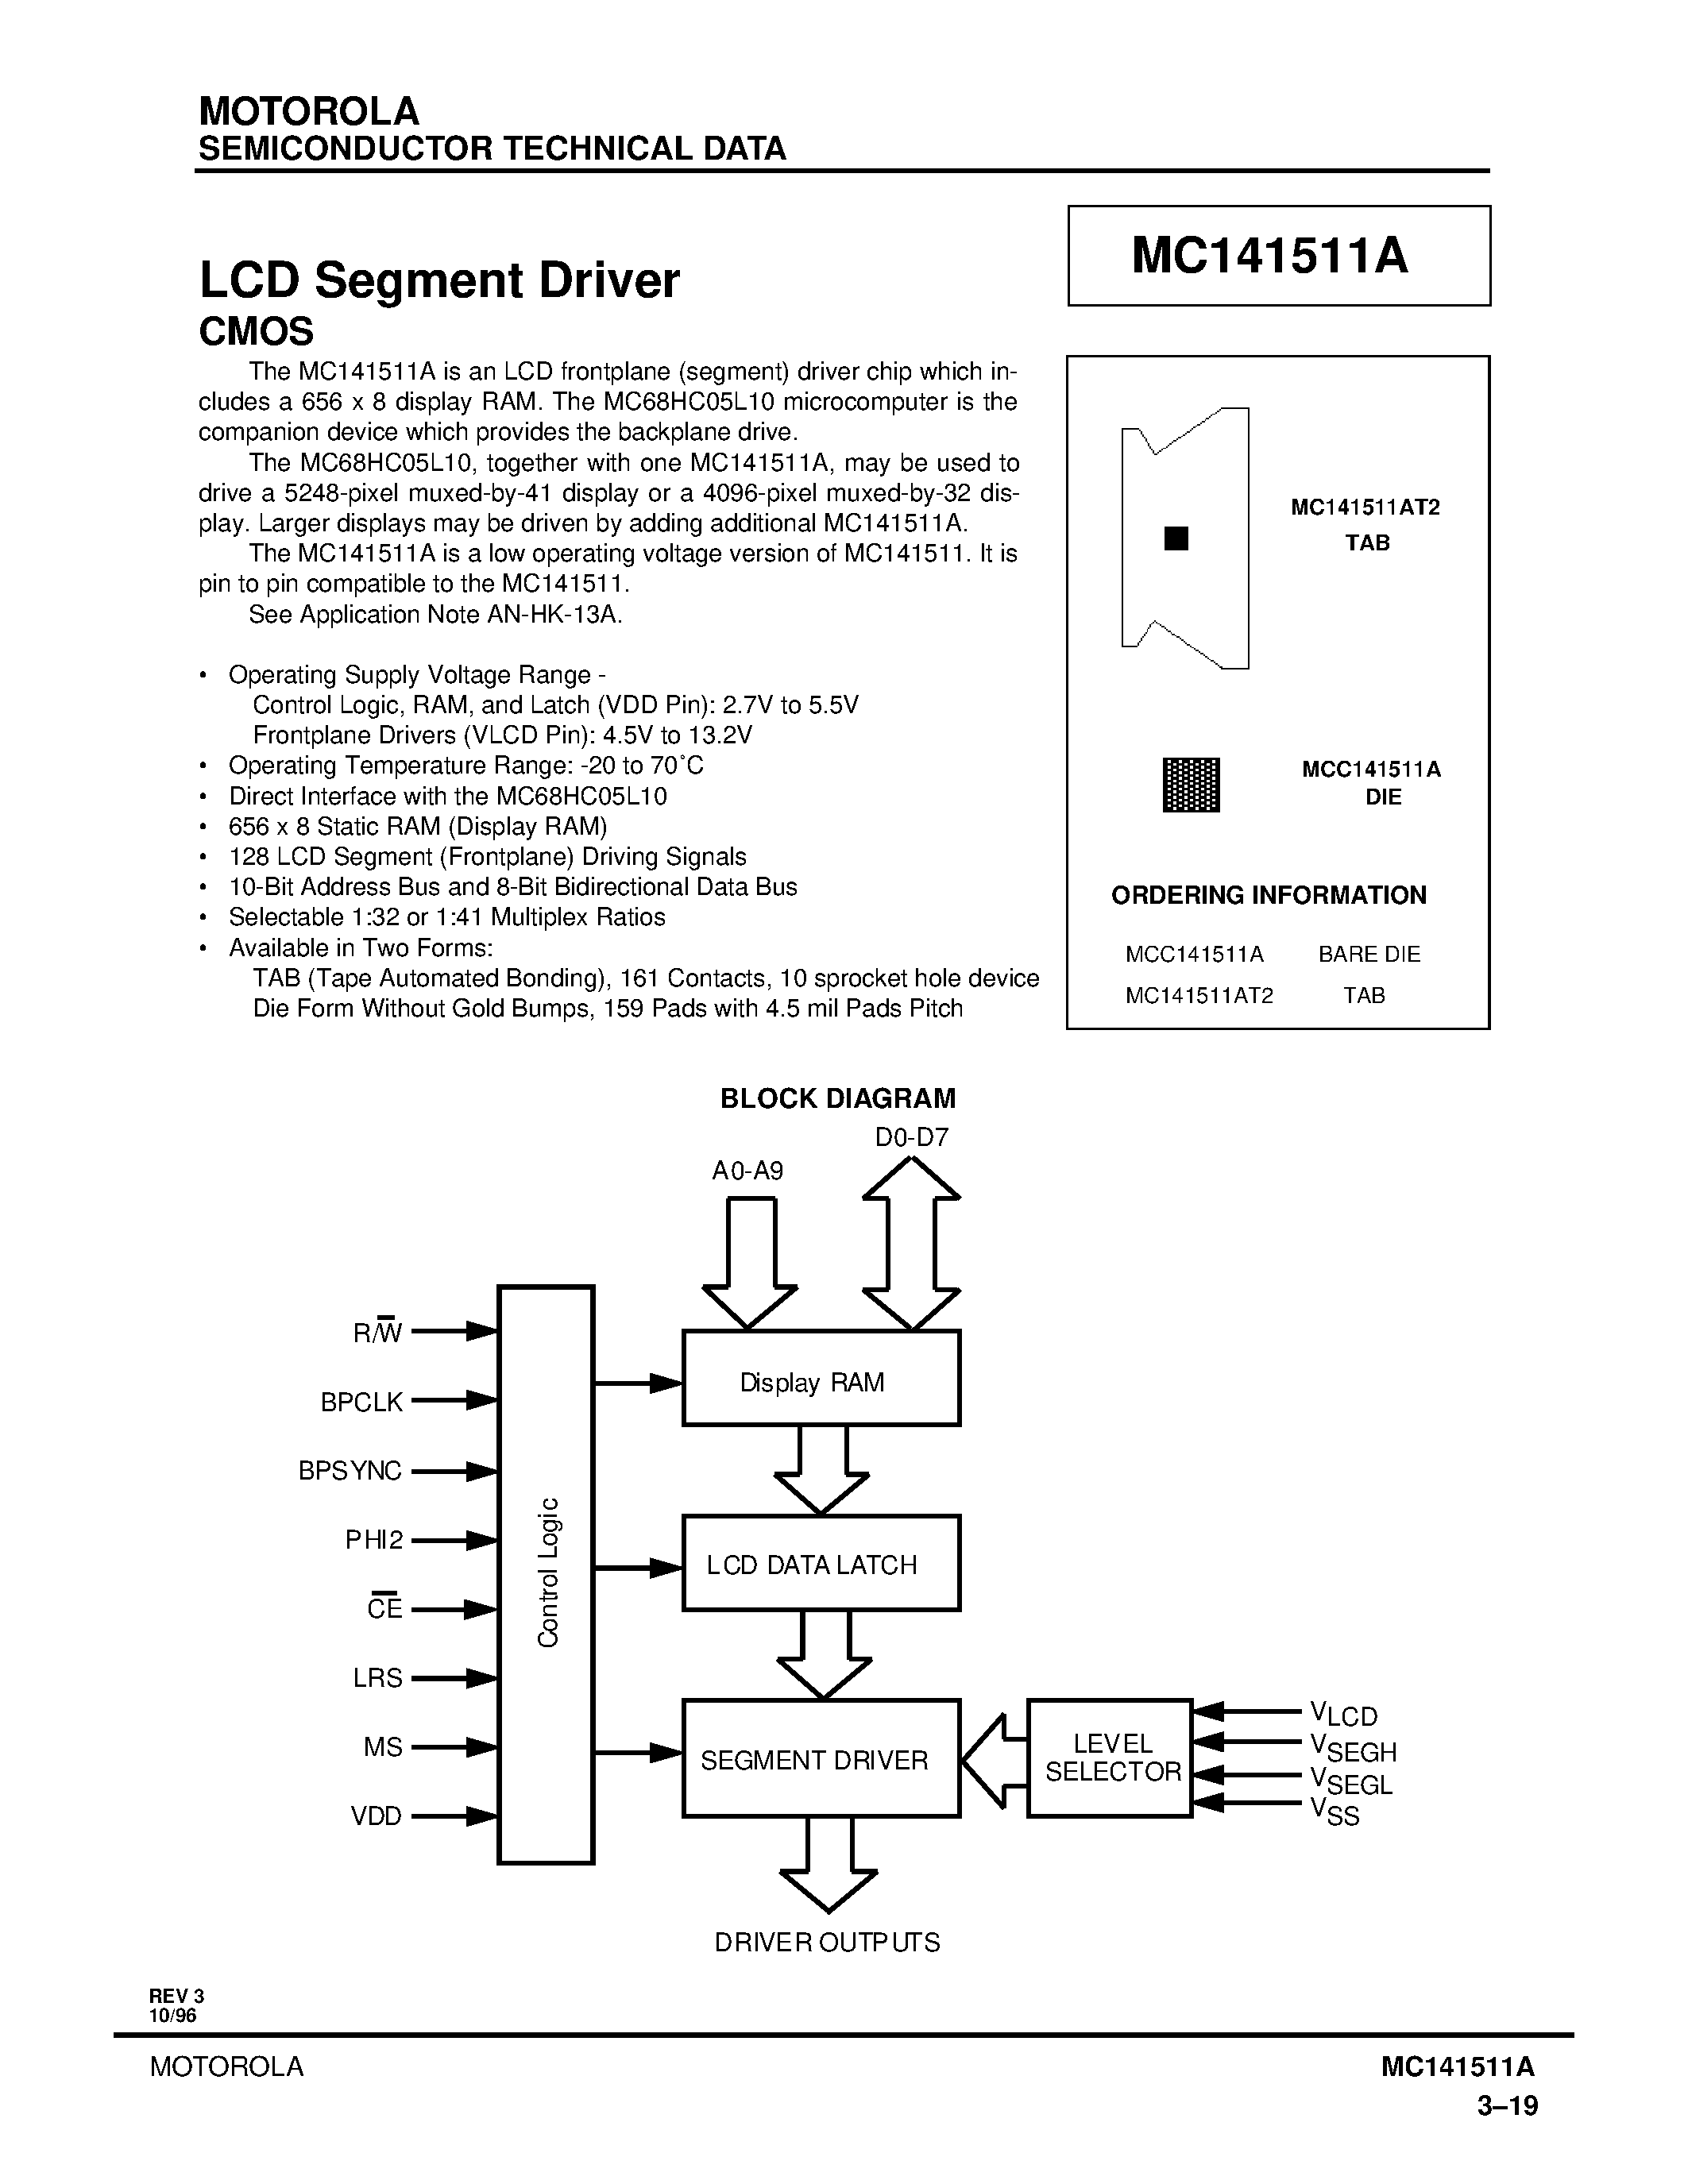 Datasheet MC141511AT2 - LCD Segment Driver CMOS page 1